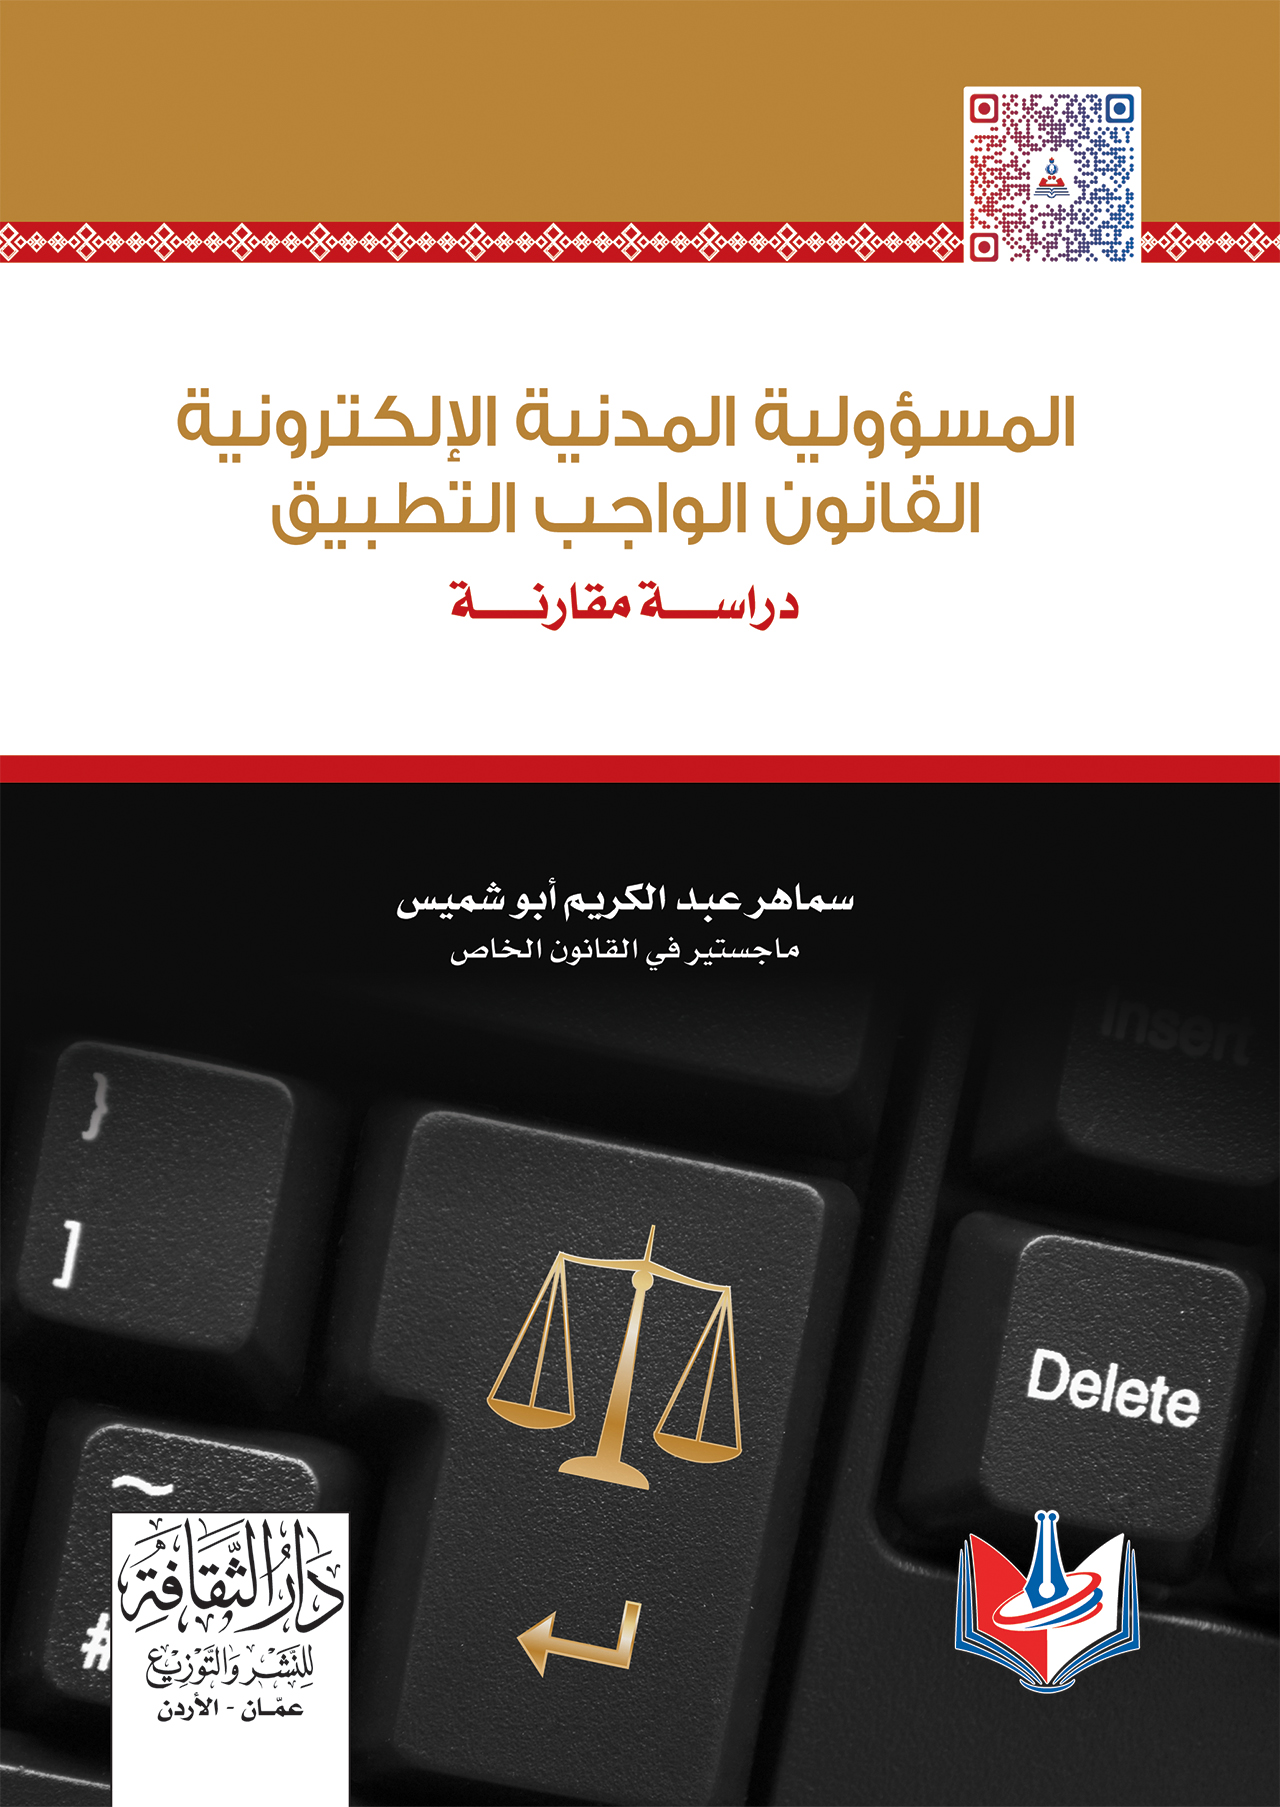 المسؤولية المدنية الالكترونية - القانون الواجب التطبيق 